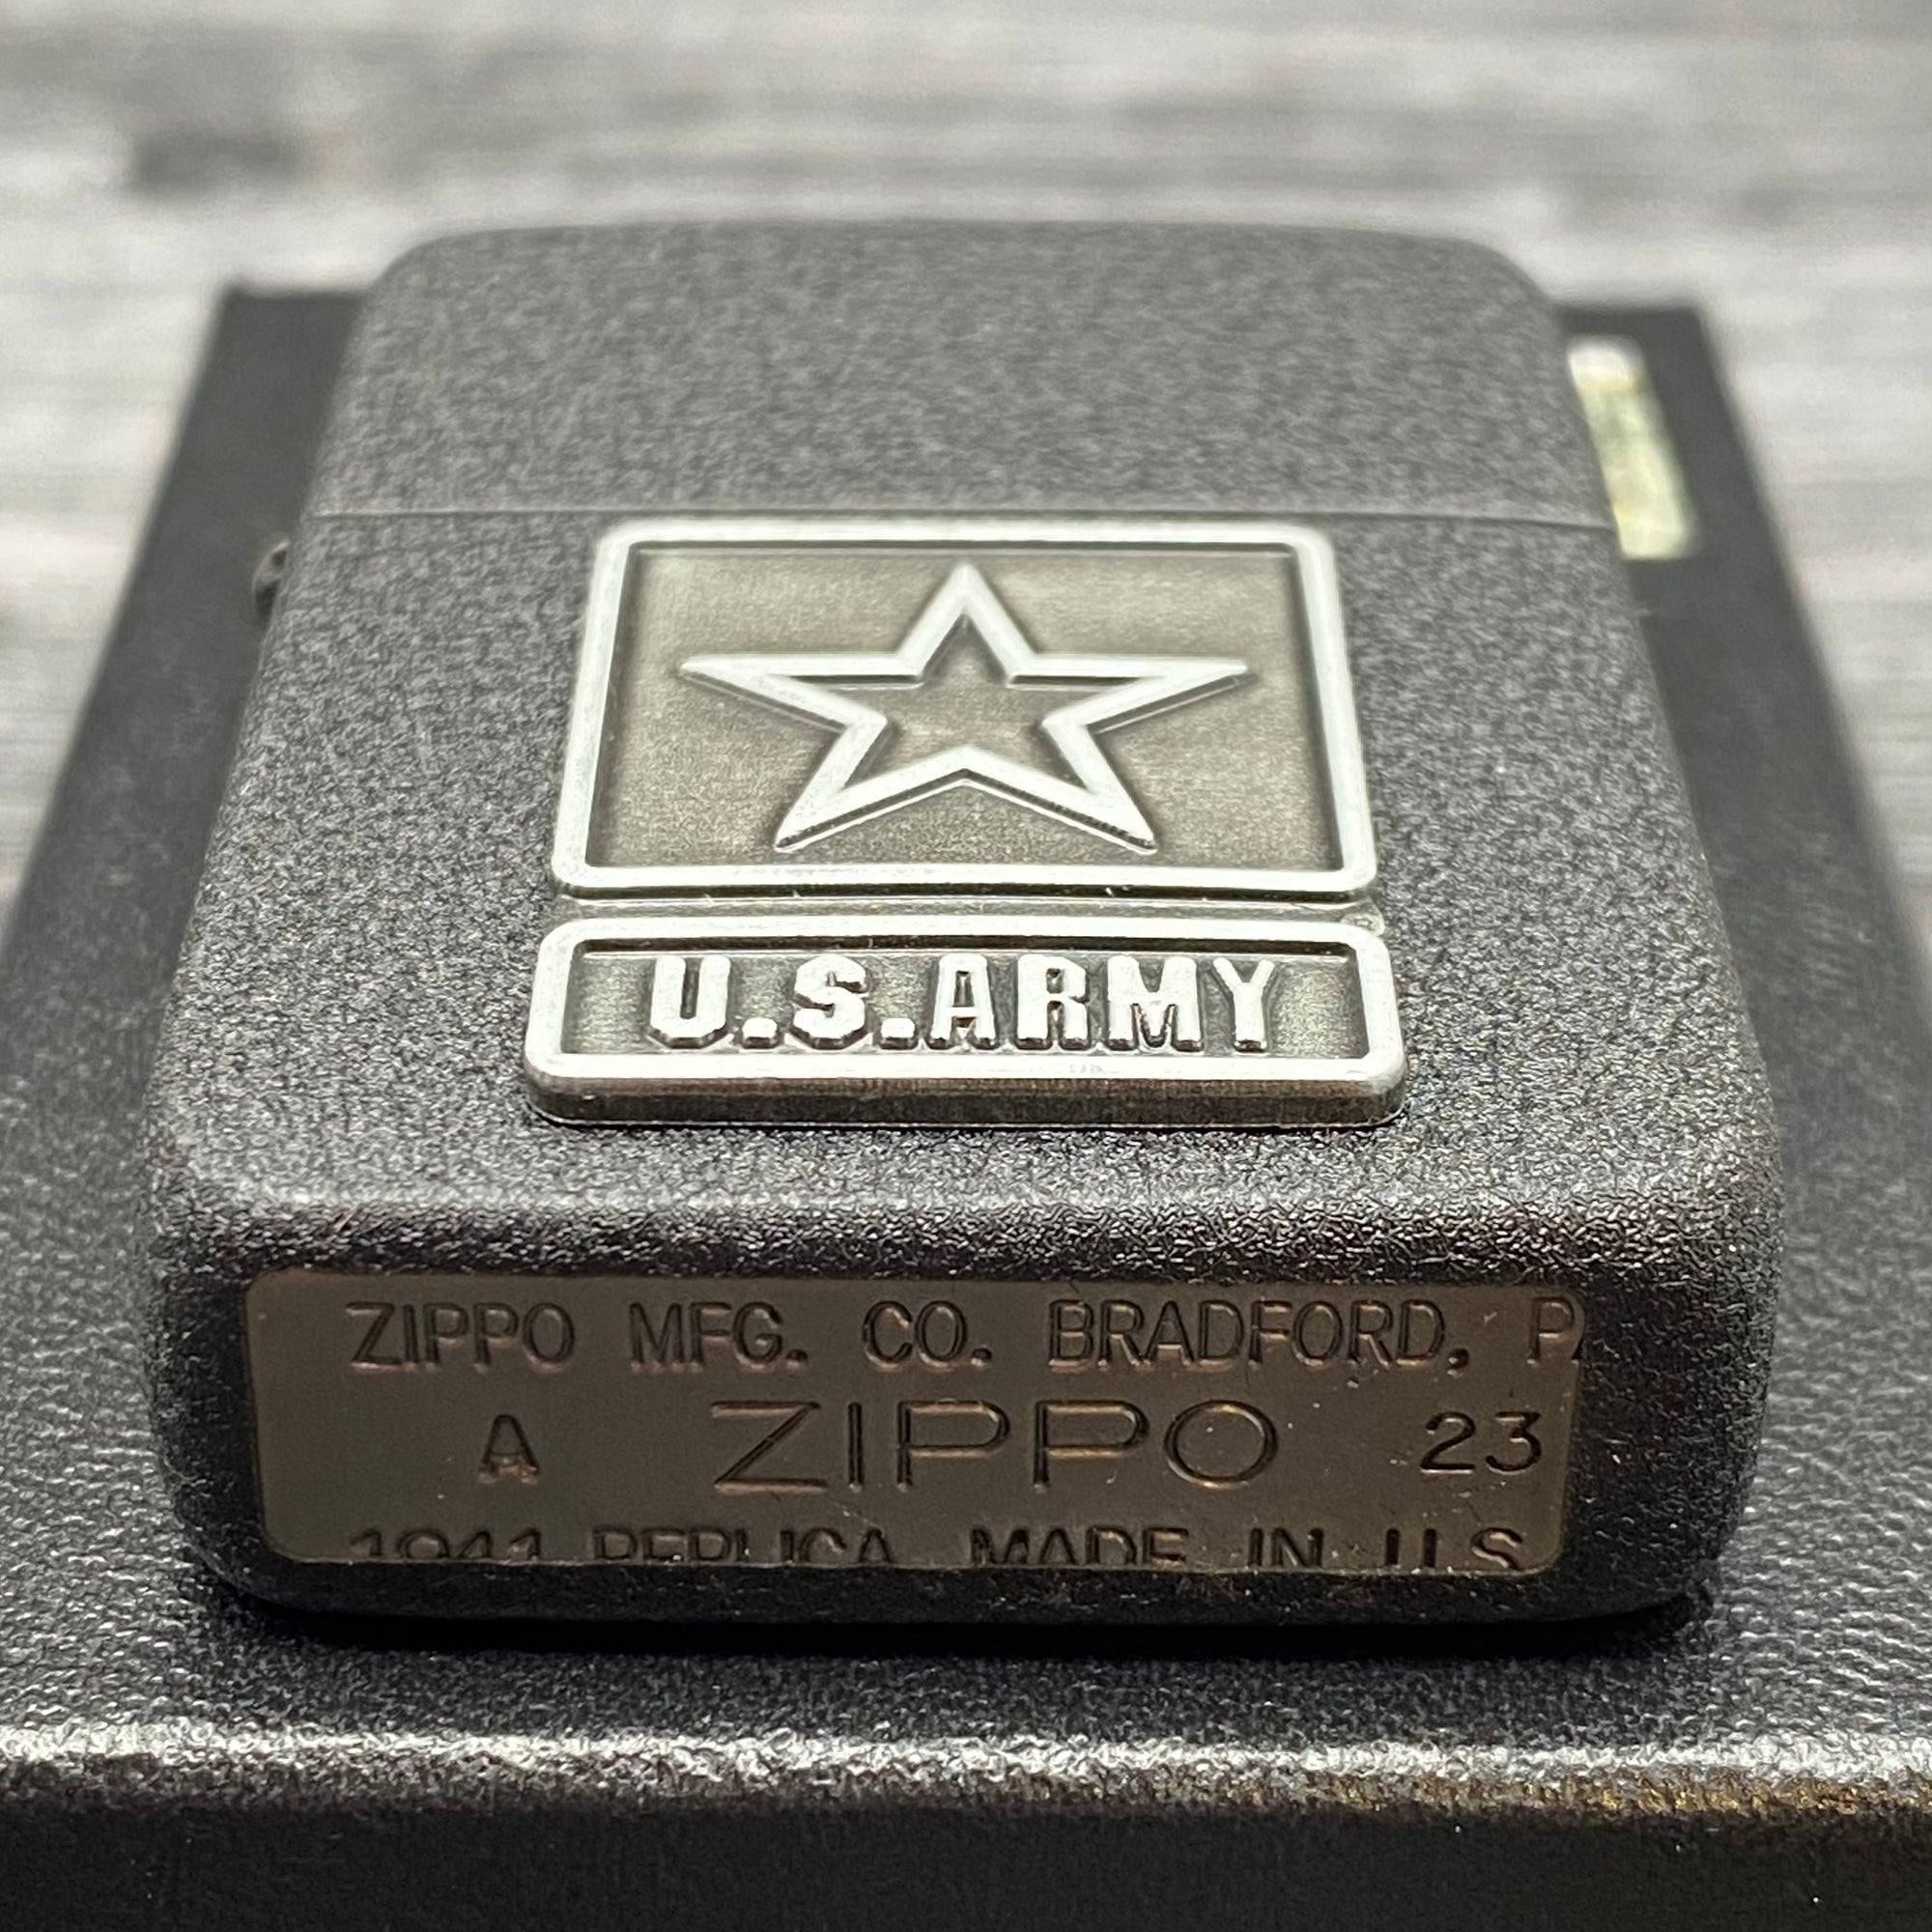 ZIPPO LIGHTER - U.S. Army - 1941 Replica - Black Crackle®